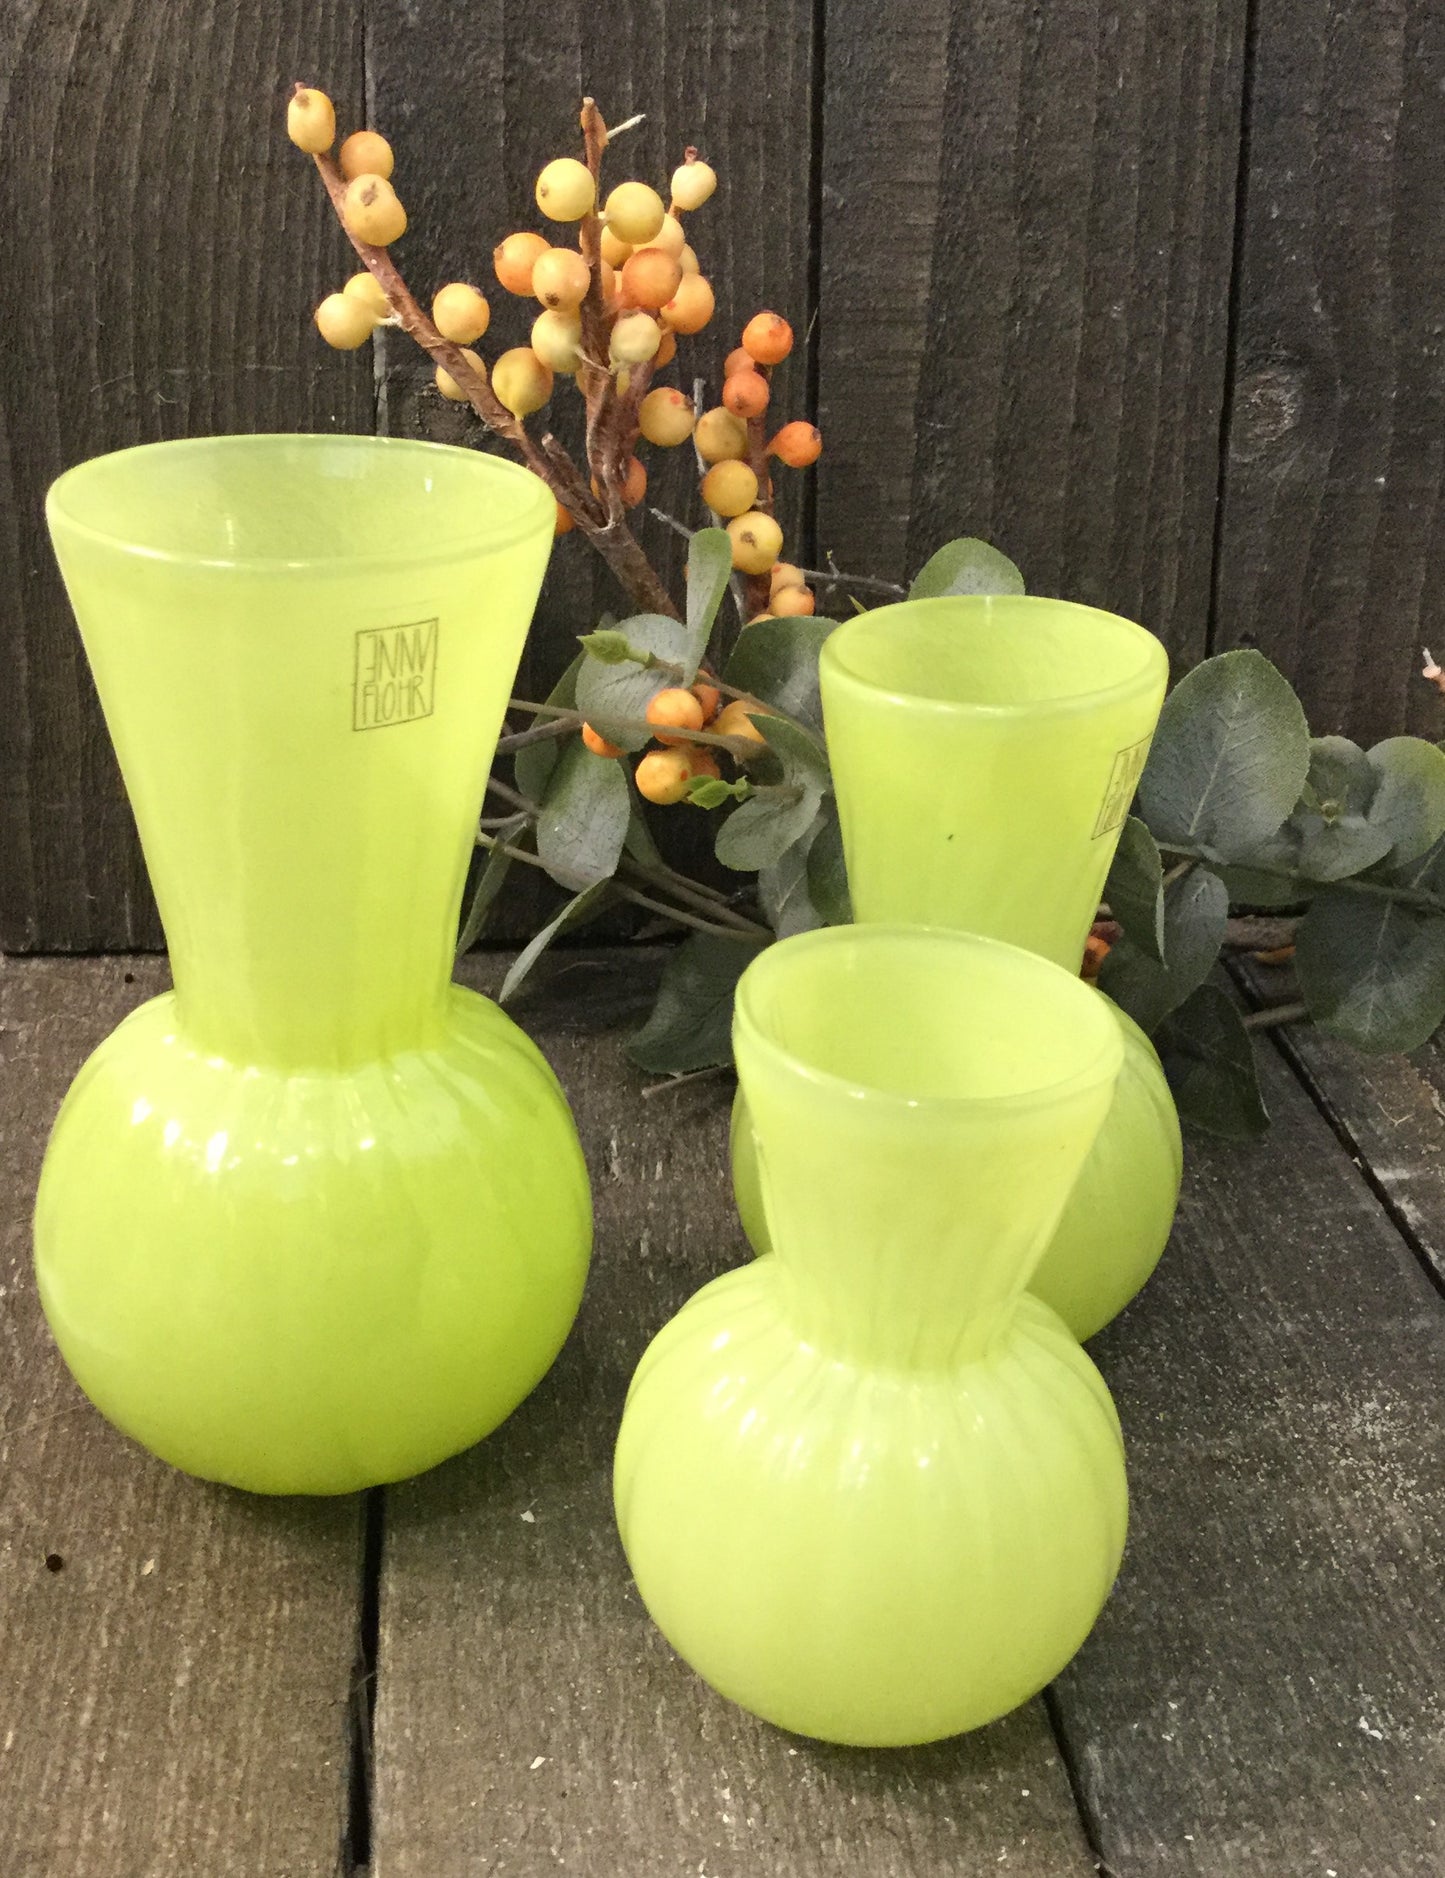 Nøglehuls vase i grønne nuancer